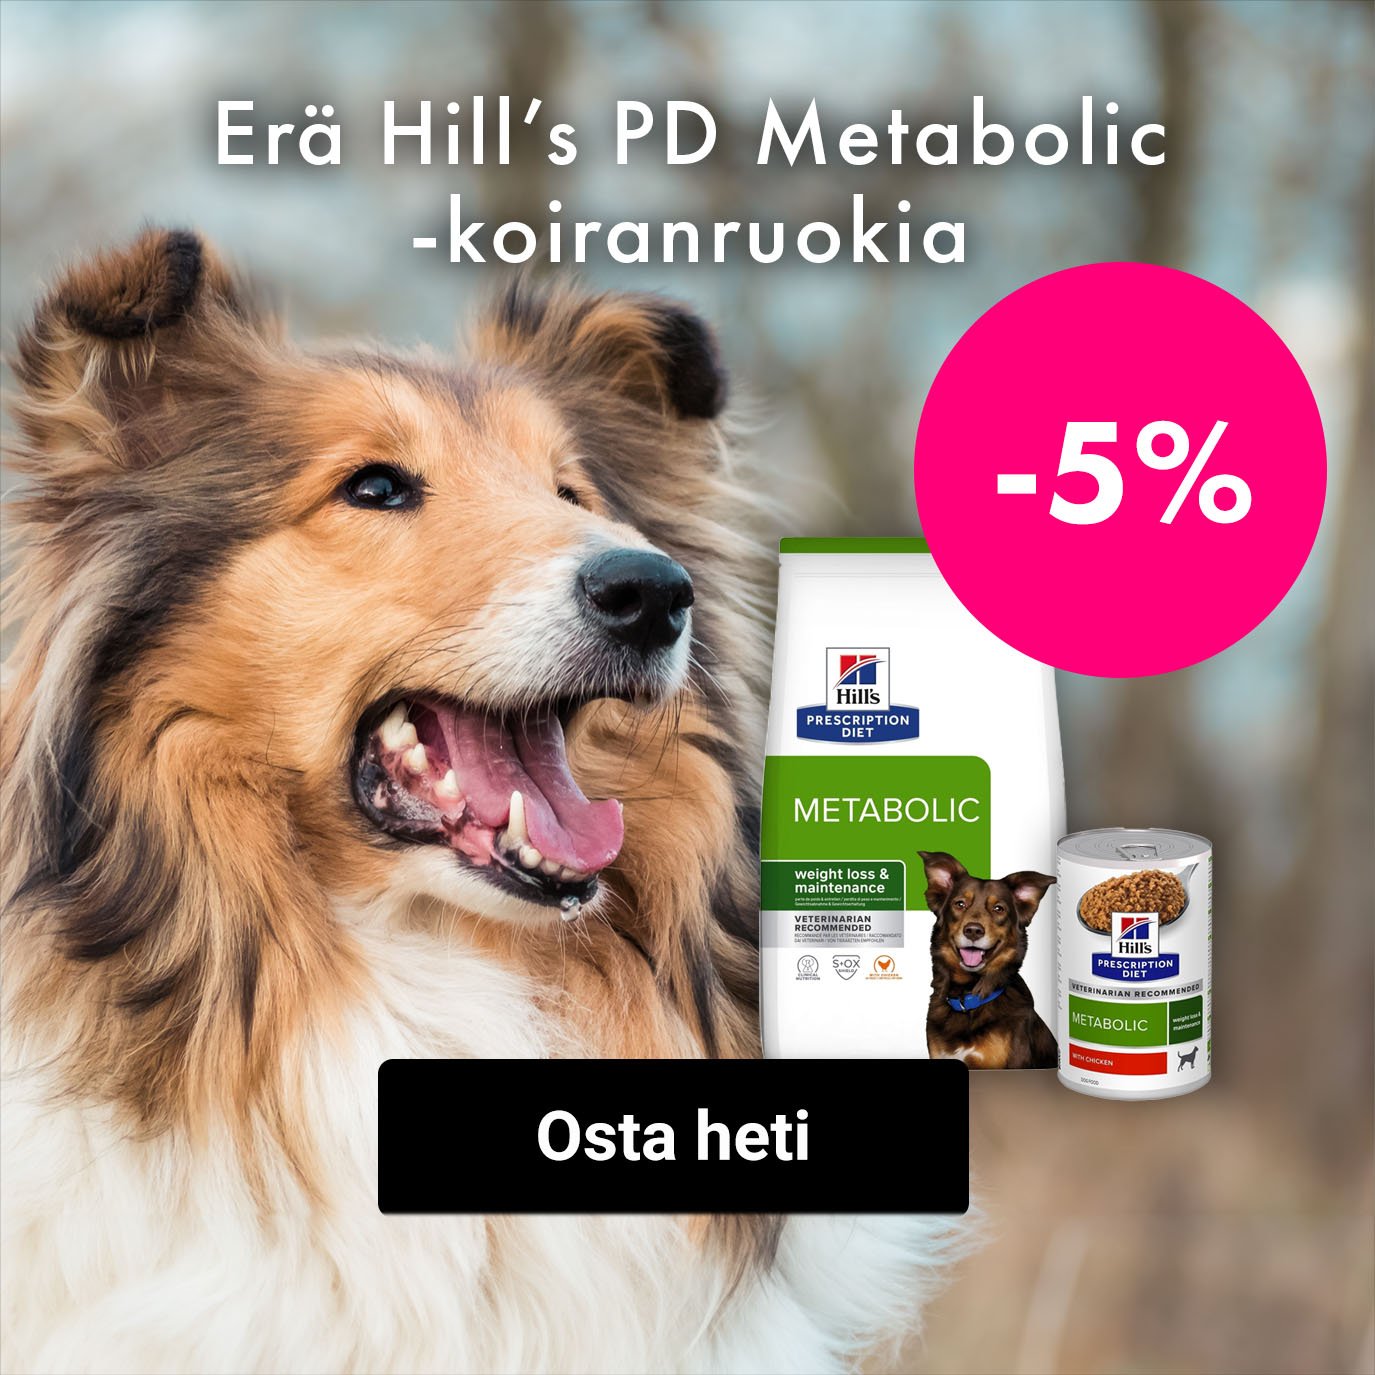 -5% Erä Hills Prescription Diet Metabolic kuiva- ja märkäruokia koiralle